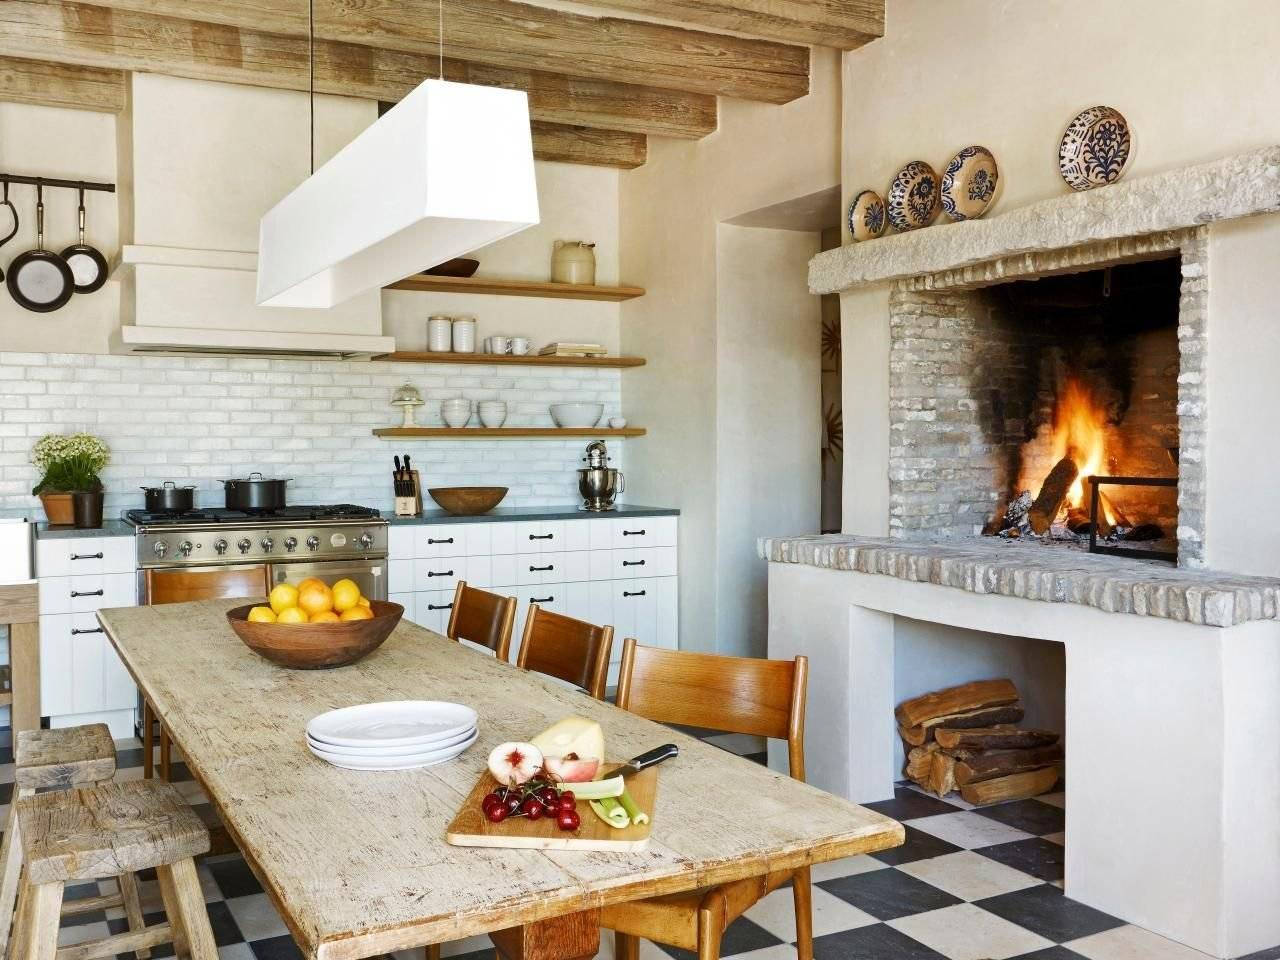 Кухня с печкой в частном доме: дизайн интерьера в деревенском и частном доме, особенности обустройства при наличии печки